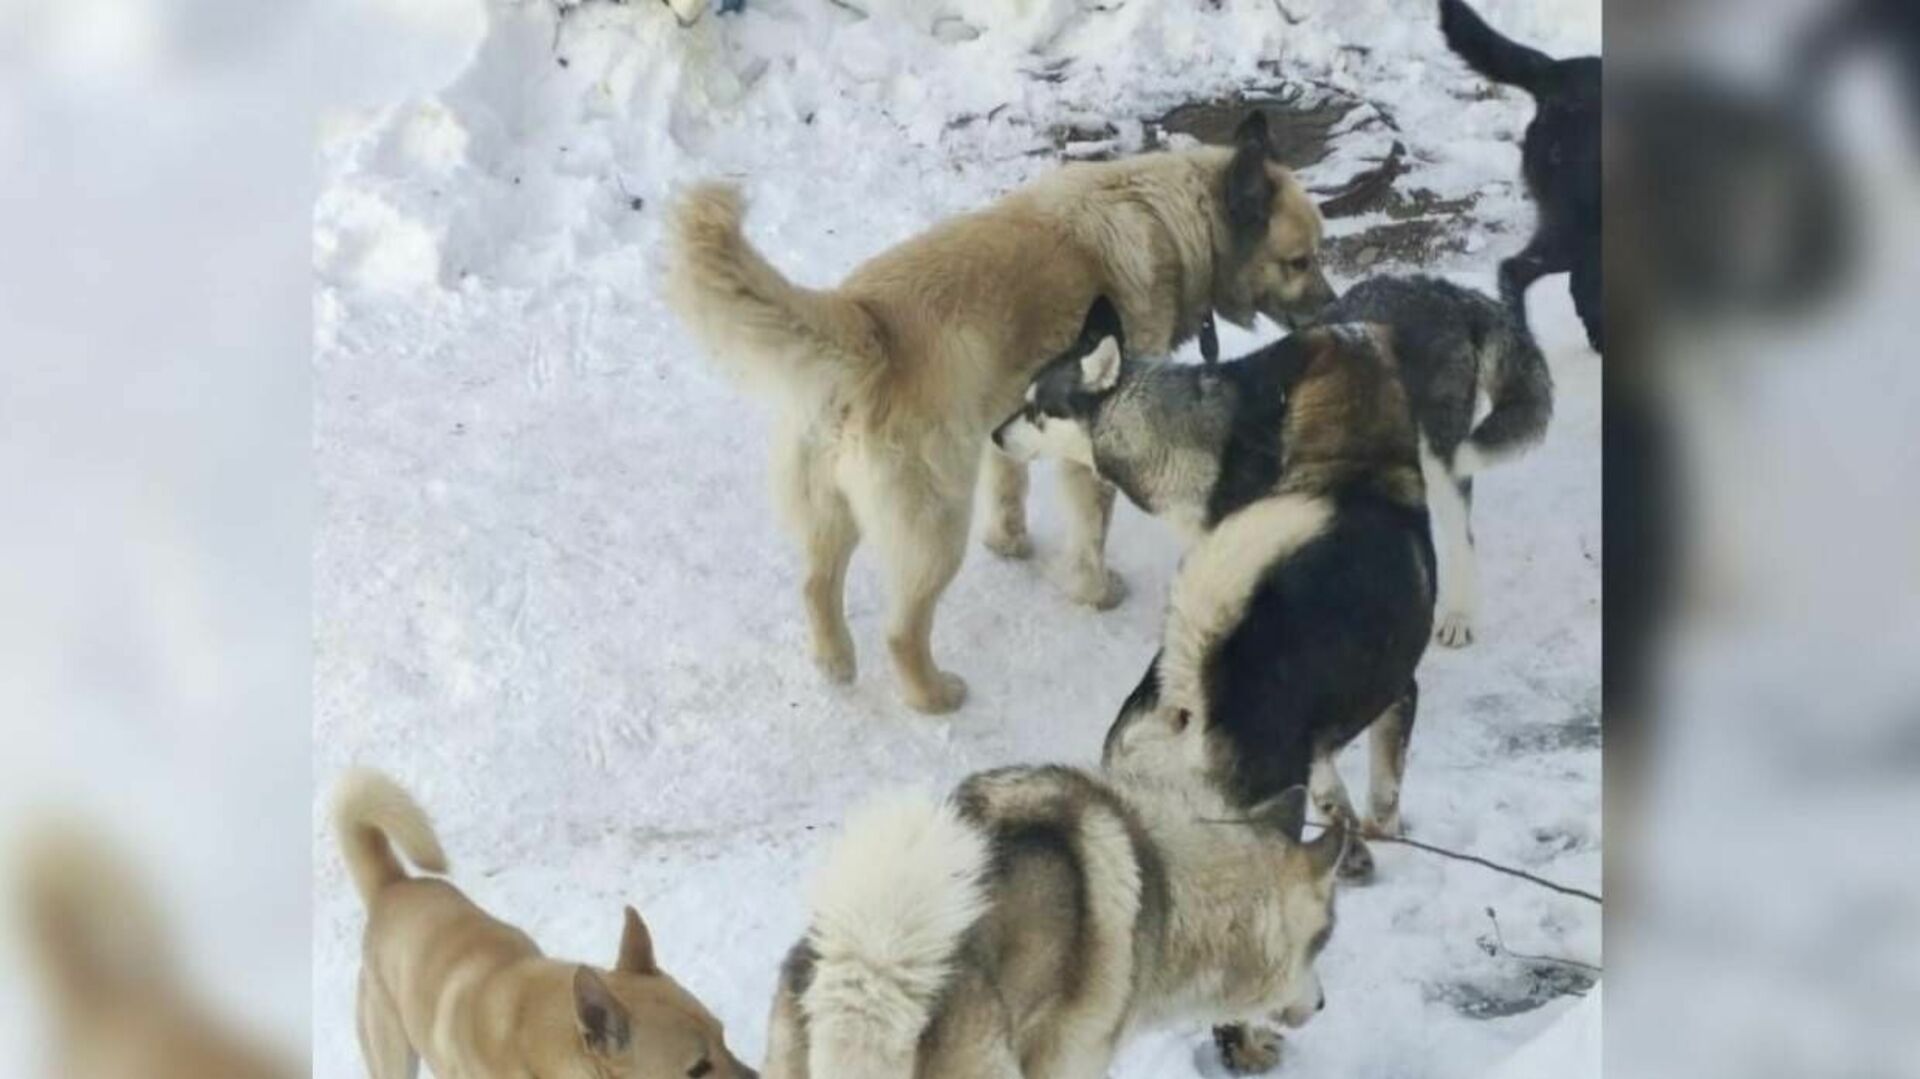 У алексея 5 собак январь февраль март